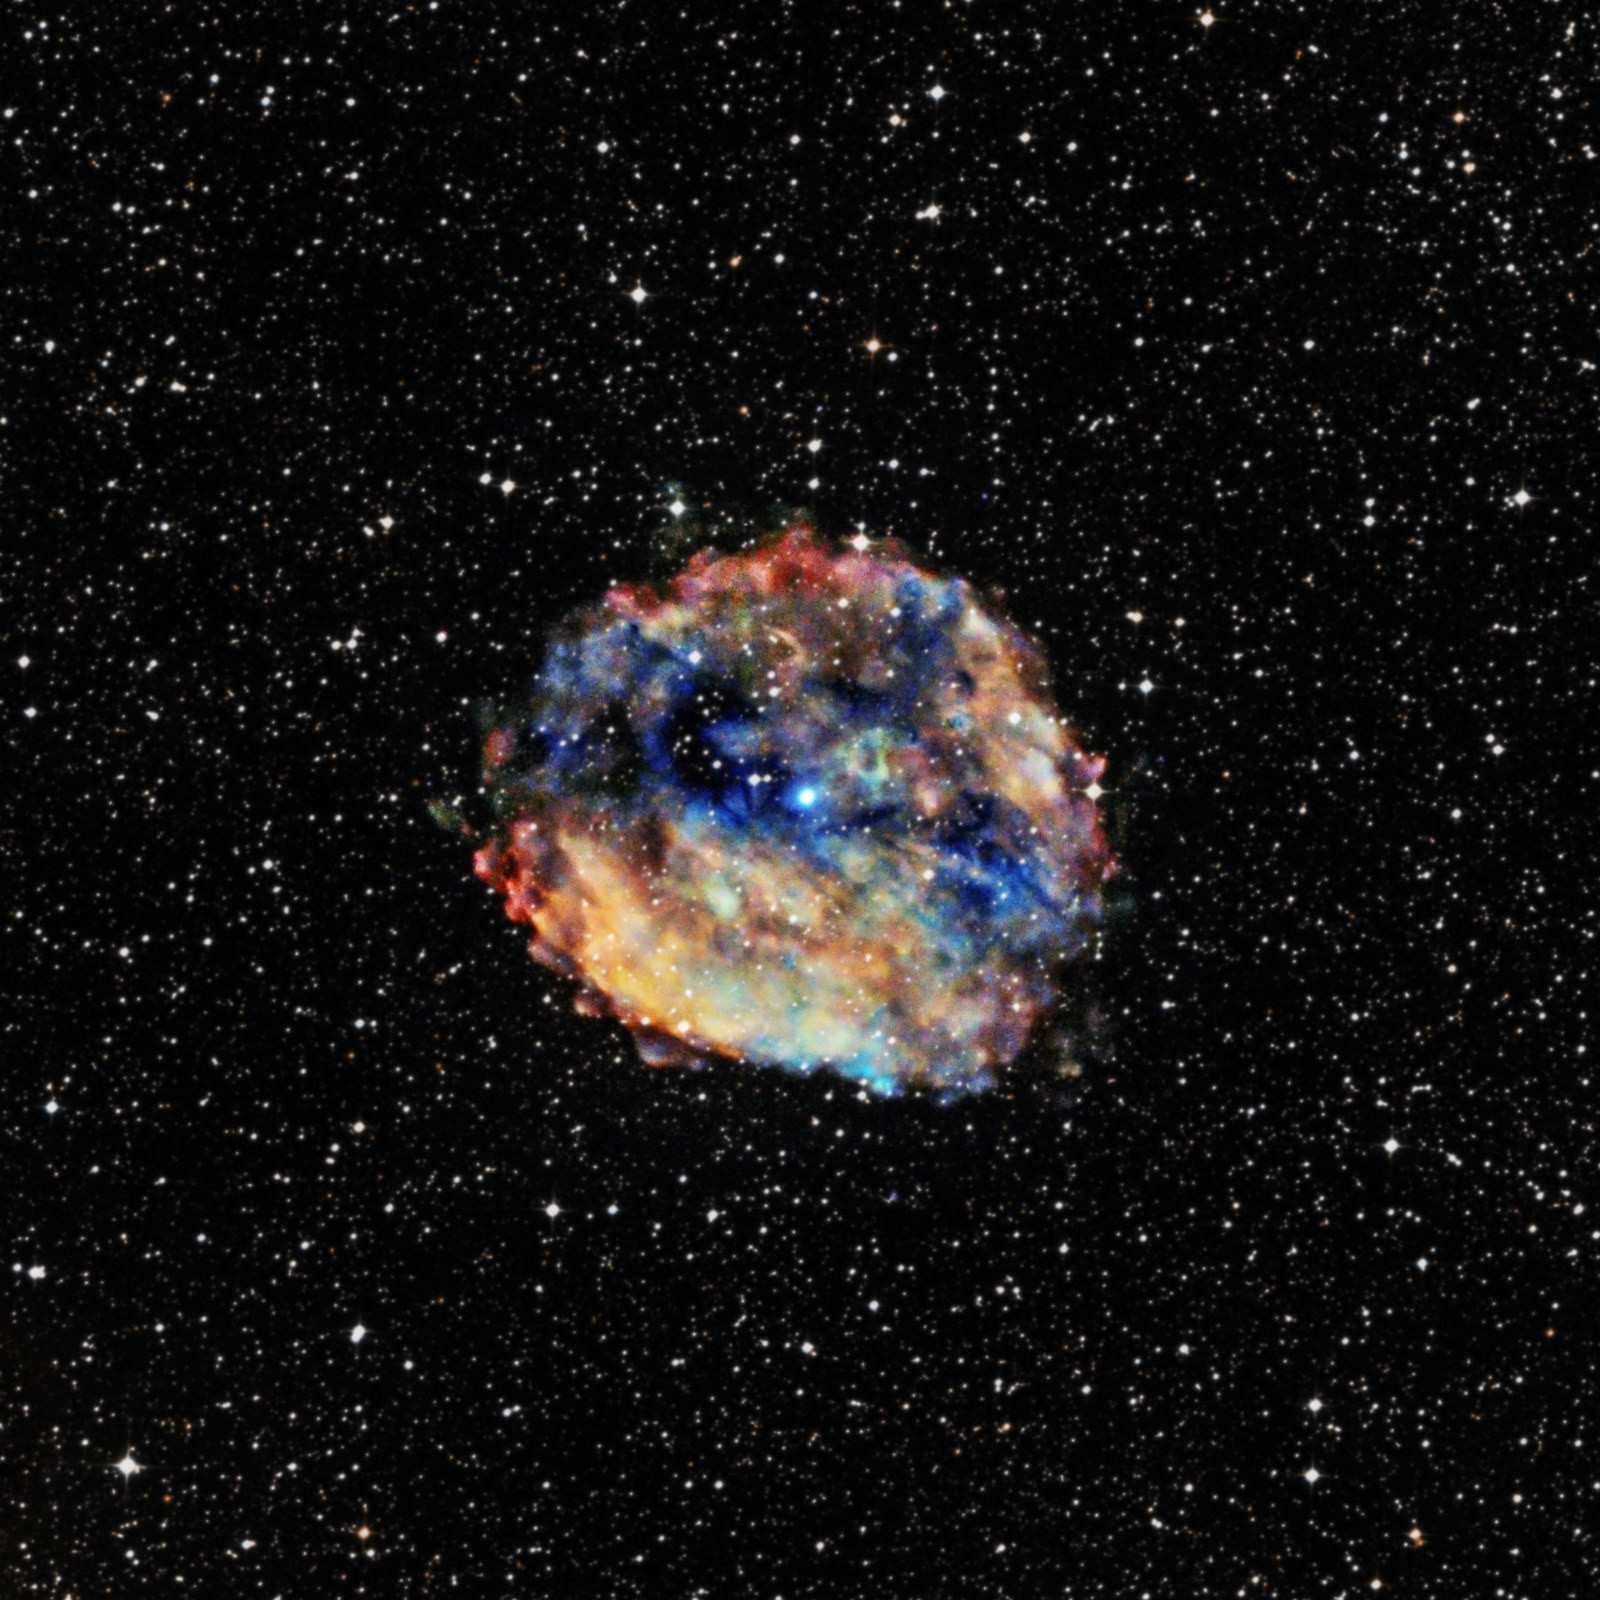 10. Новый и самый медленный магнетар, обнаруженный в этом году астрономами, - пульсар (вращающиеся нейтронные звезды) 1E 1613 в центре туманности RCW 103 (Chandra X-ray Observatory Center / X-ray: NASA/CXC/University of Amsterdam) наука, научные исследования, научные открытия, фотографии